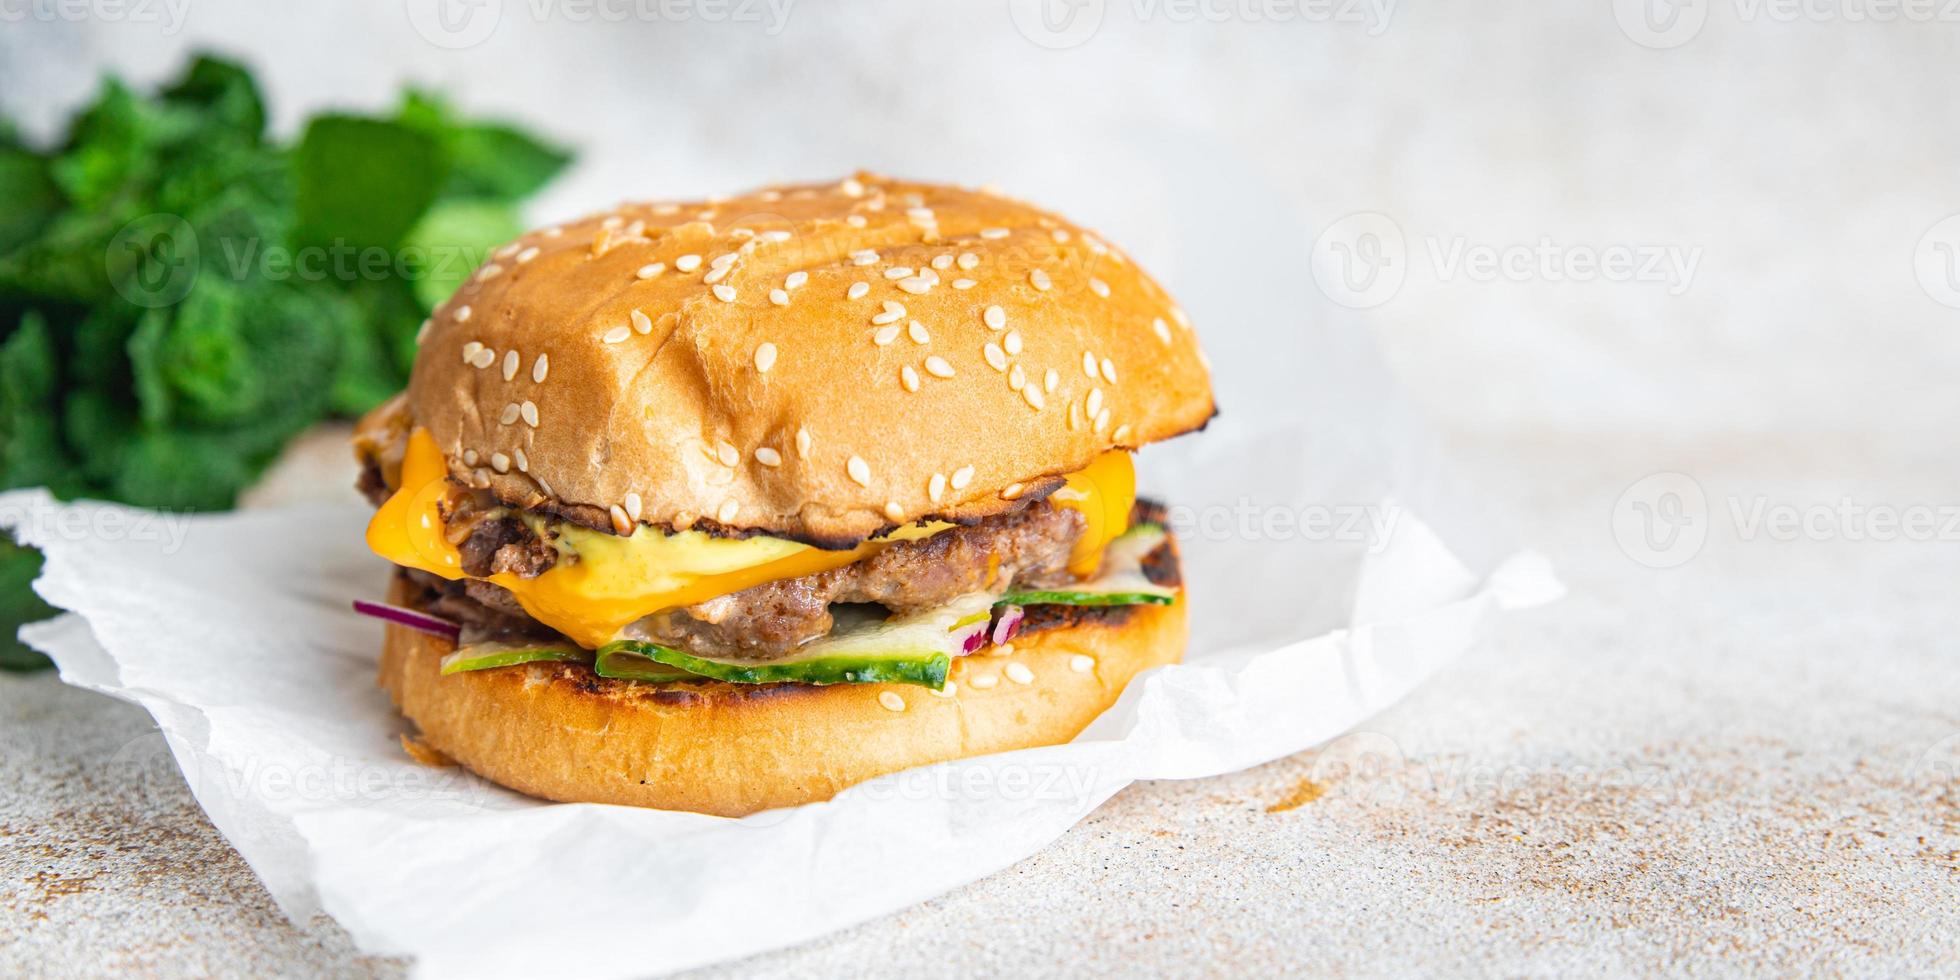 bocadillo de comida de sándwich de hamburguesa de pollo foto